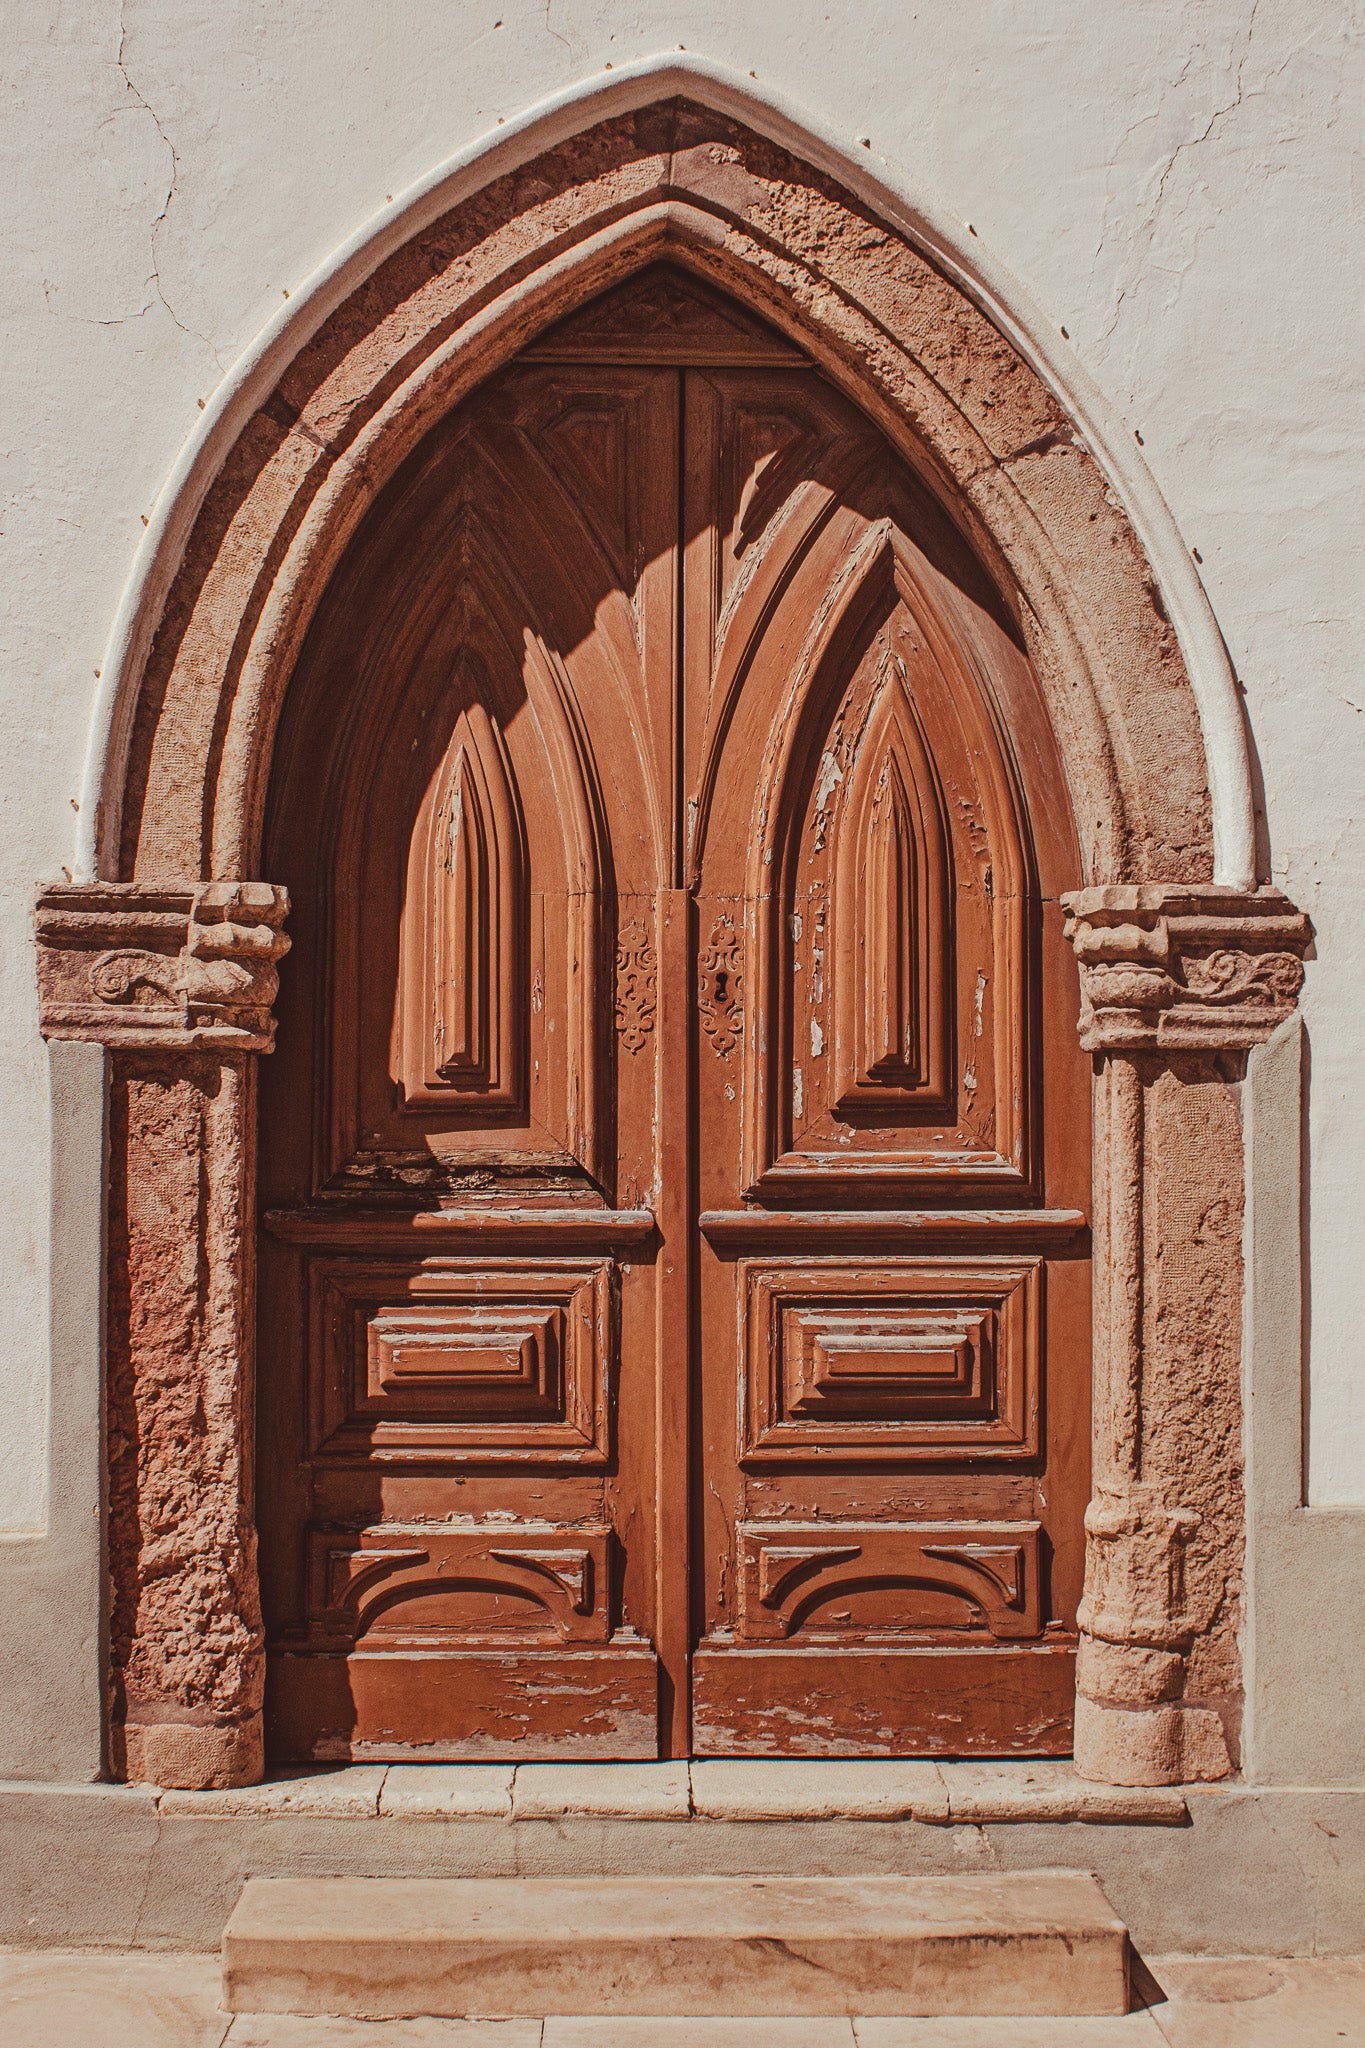 Porta da Igreja Velha